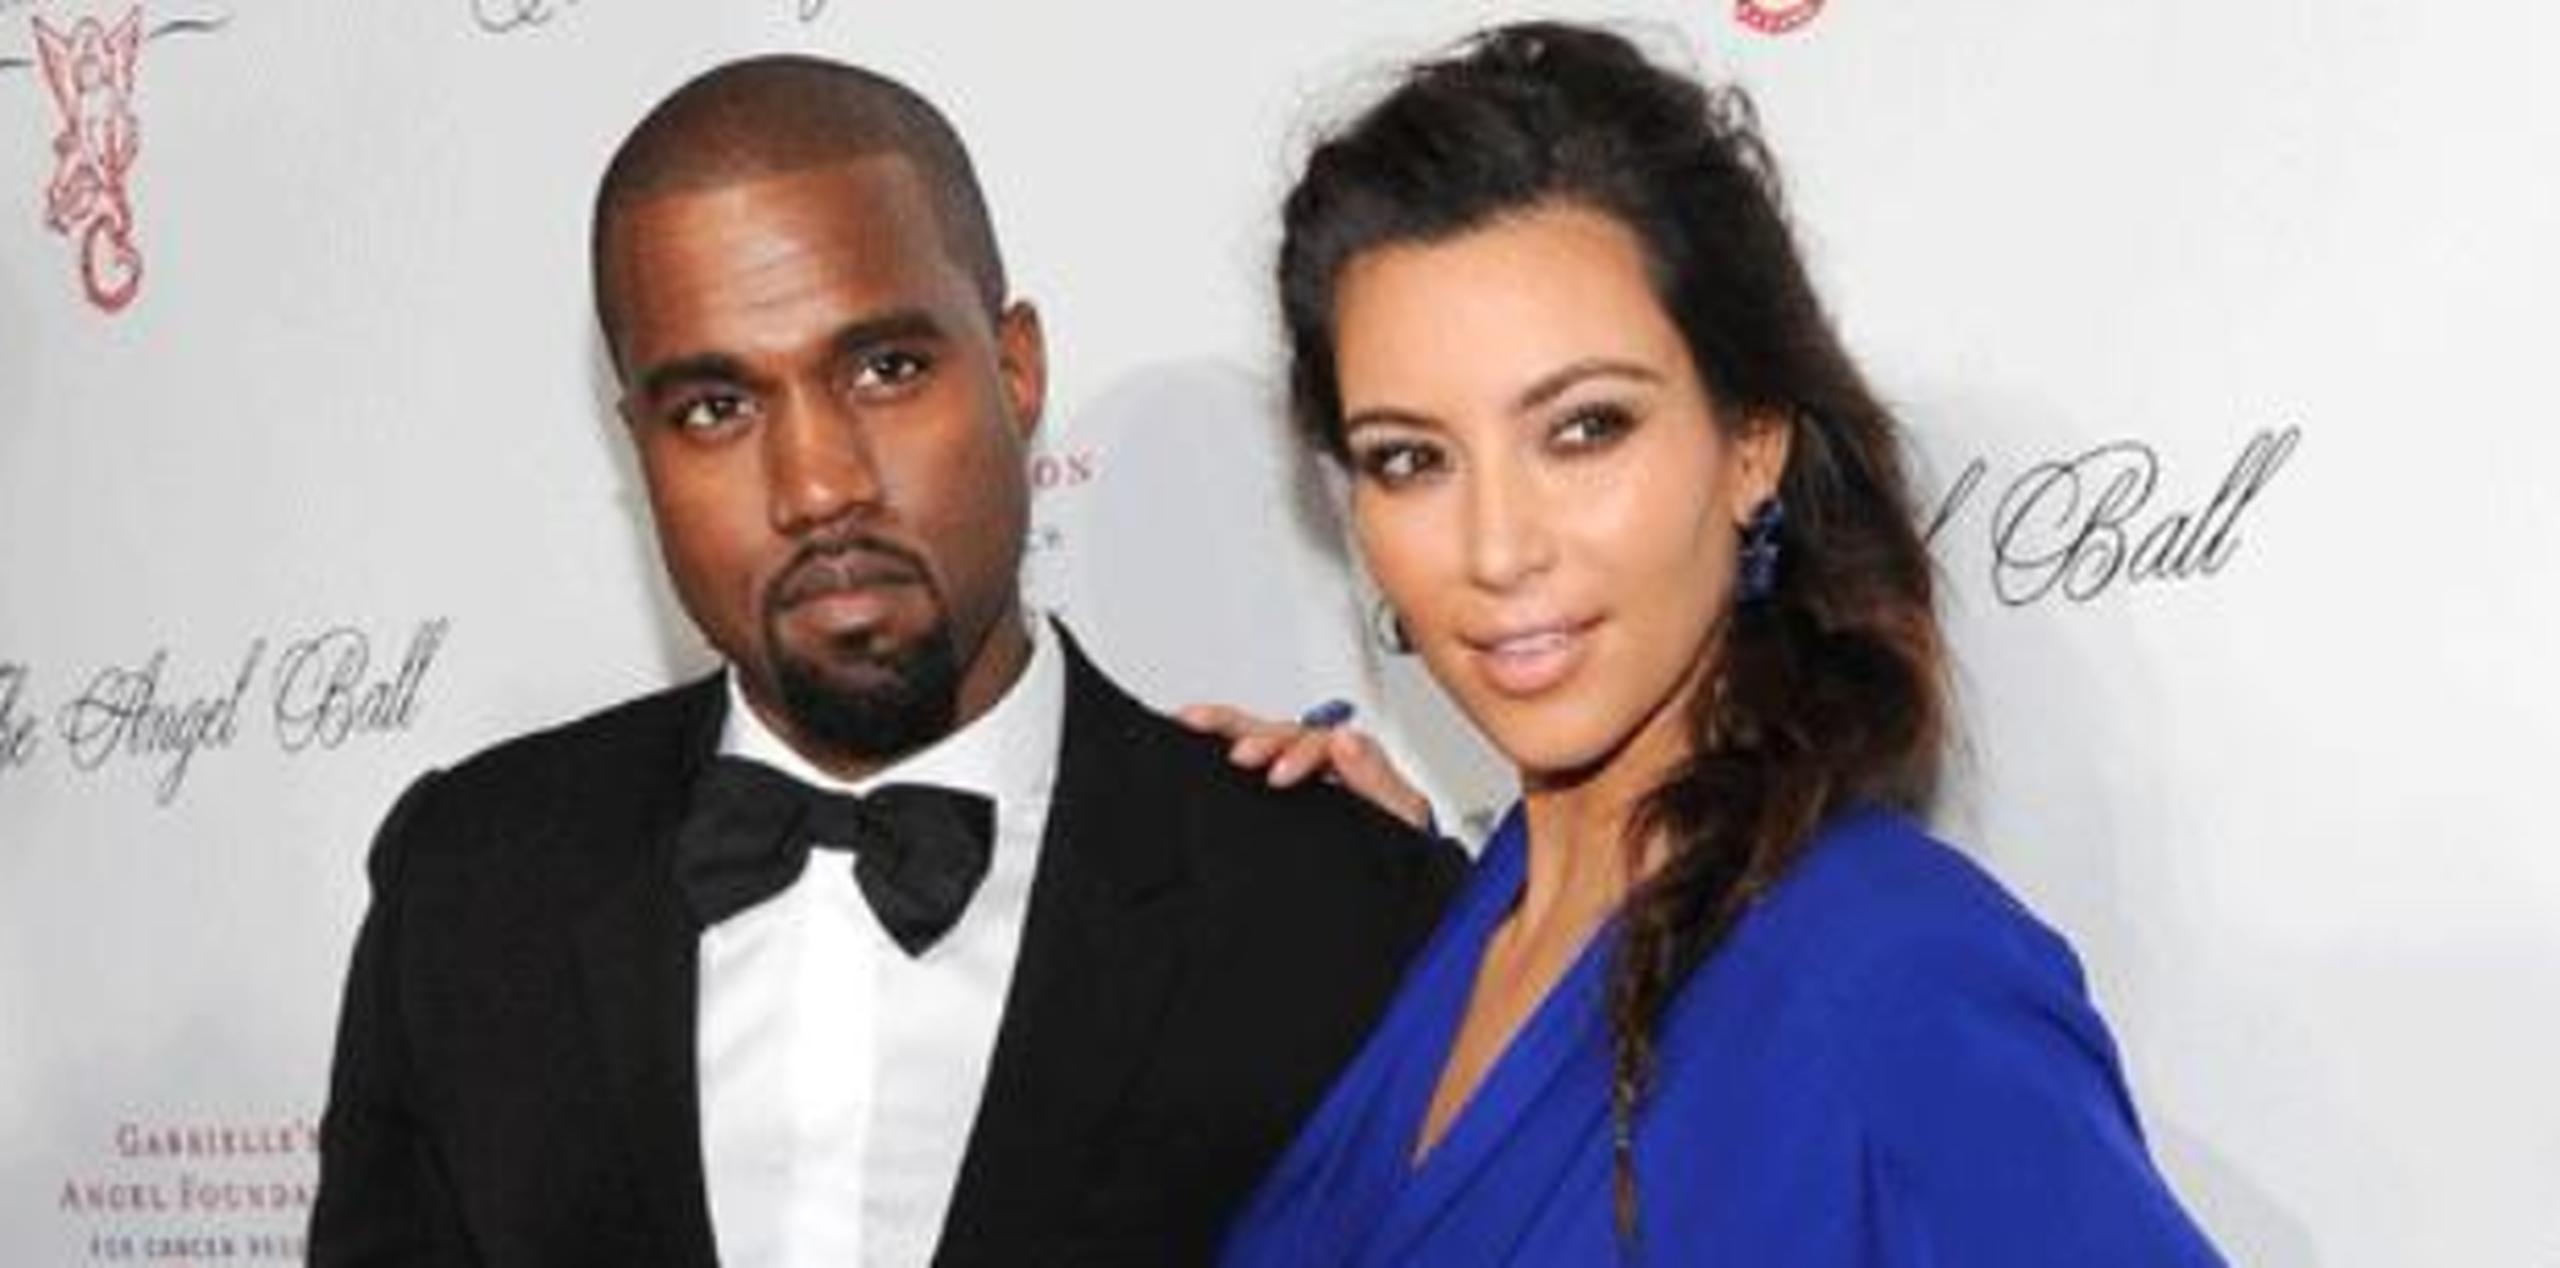 West llegó a la audición con su famosa y embarazada esposa, Kim Kardashian. (Archivo)